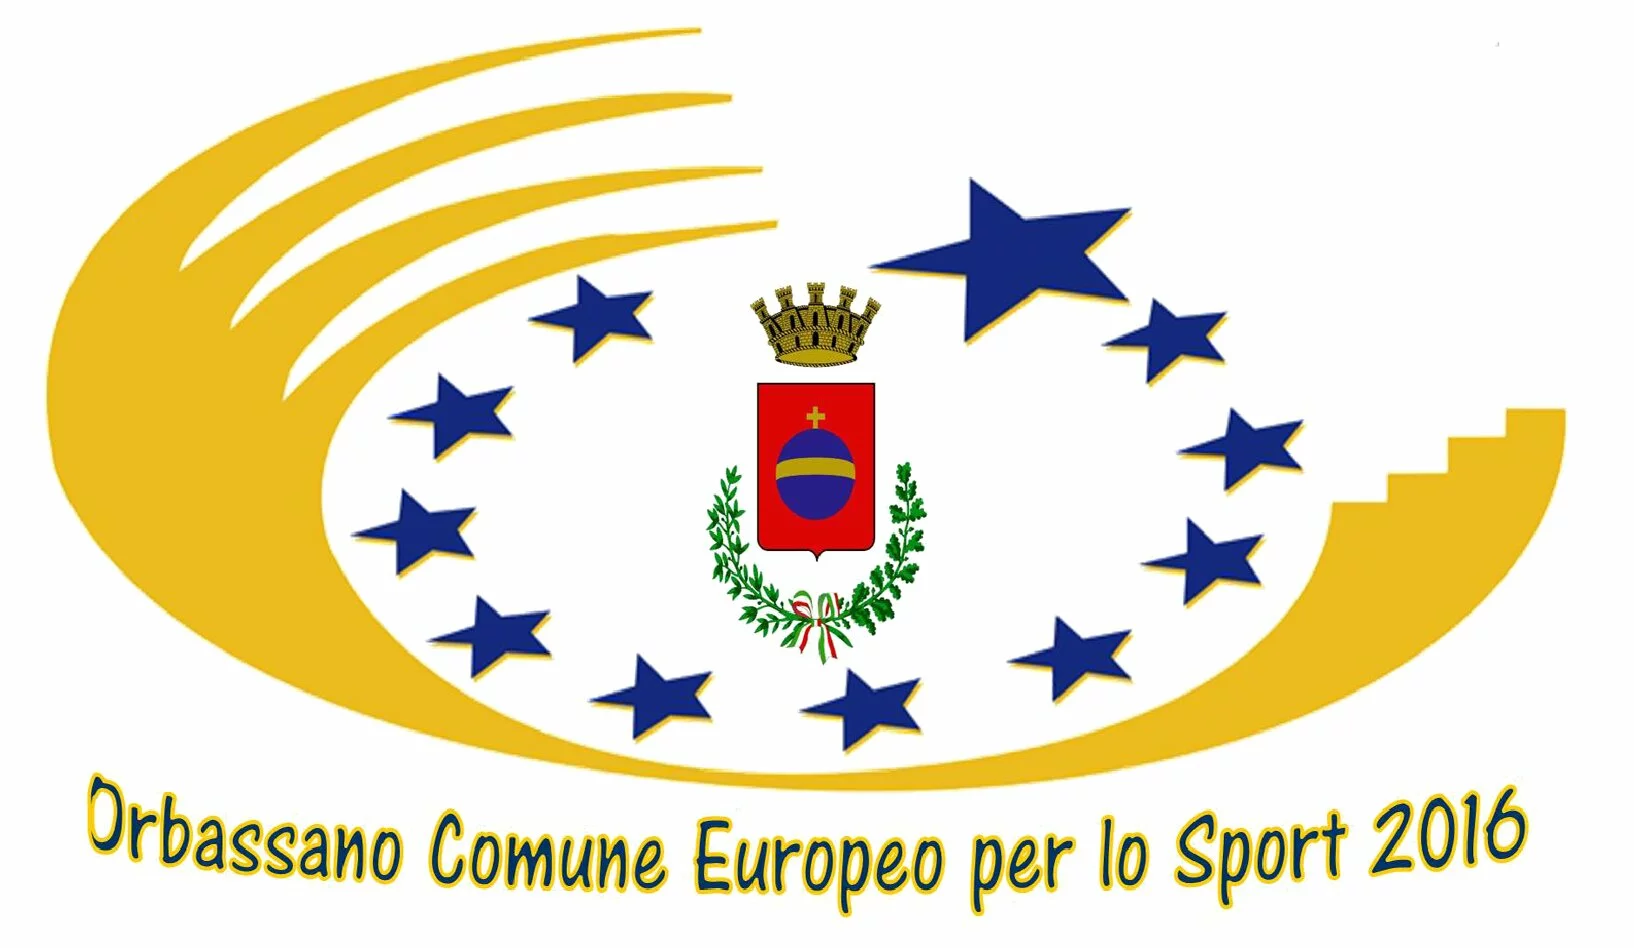 Logo Orbassano comune europeo per lo sport 2016